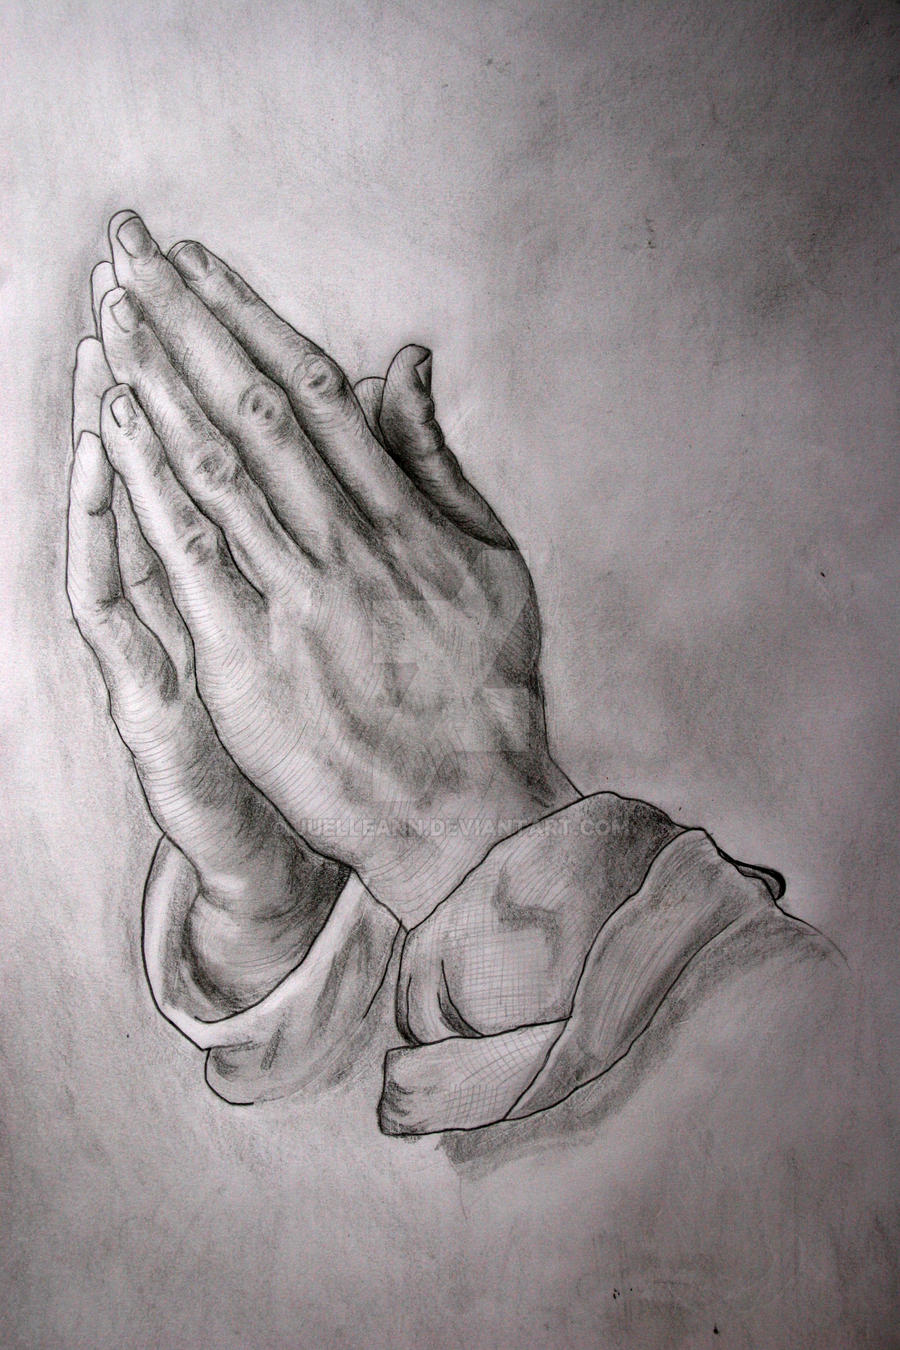 Albrecht Durer's Praying Hands by juelleann on DeviantArt